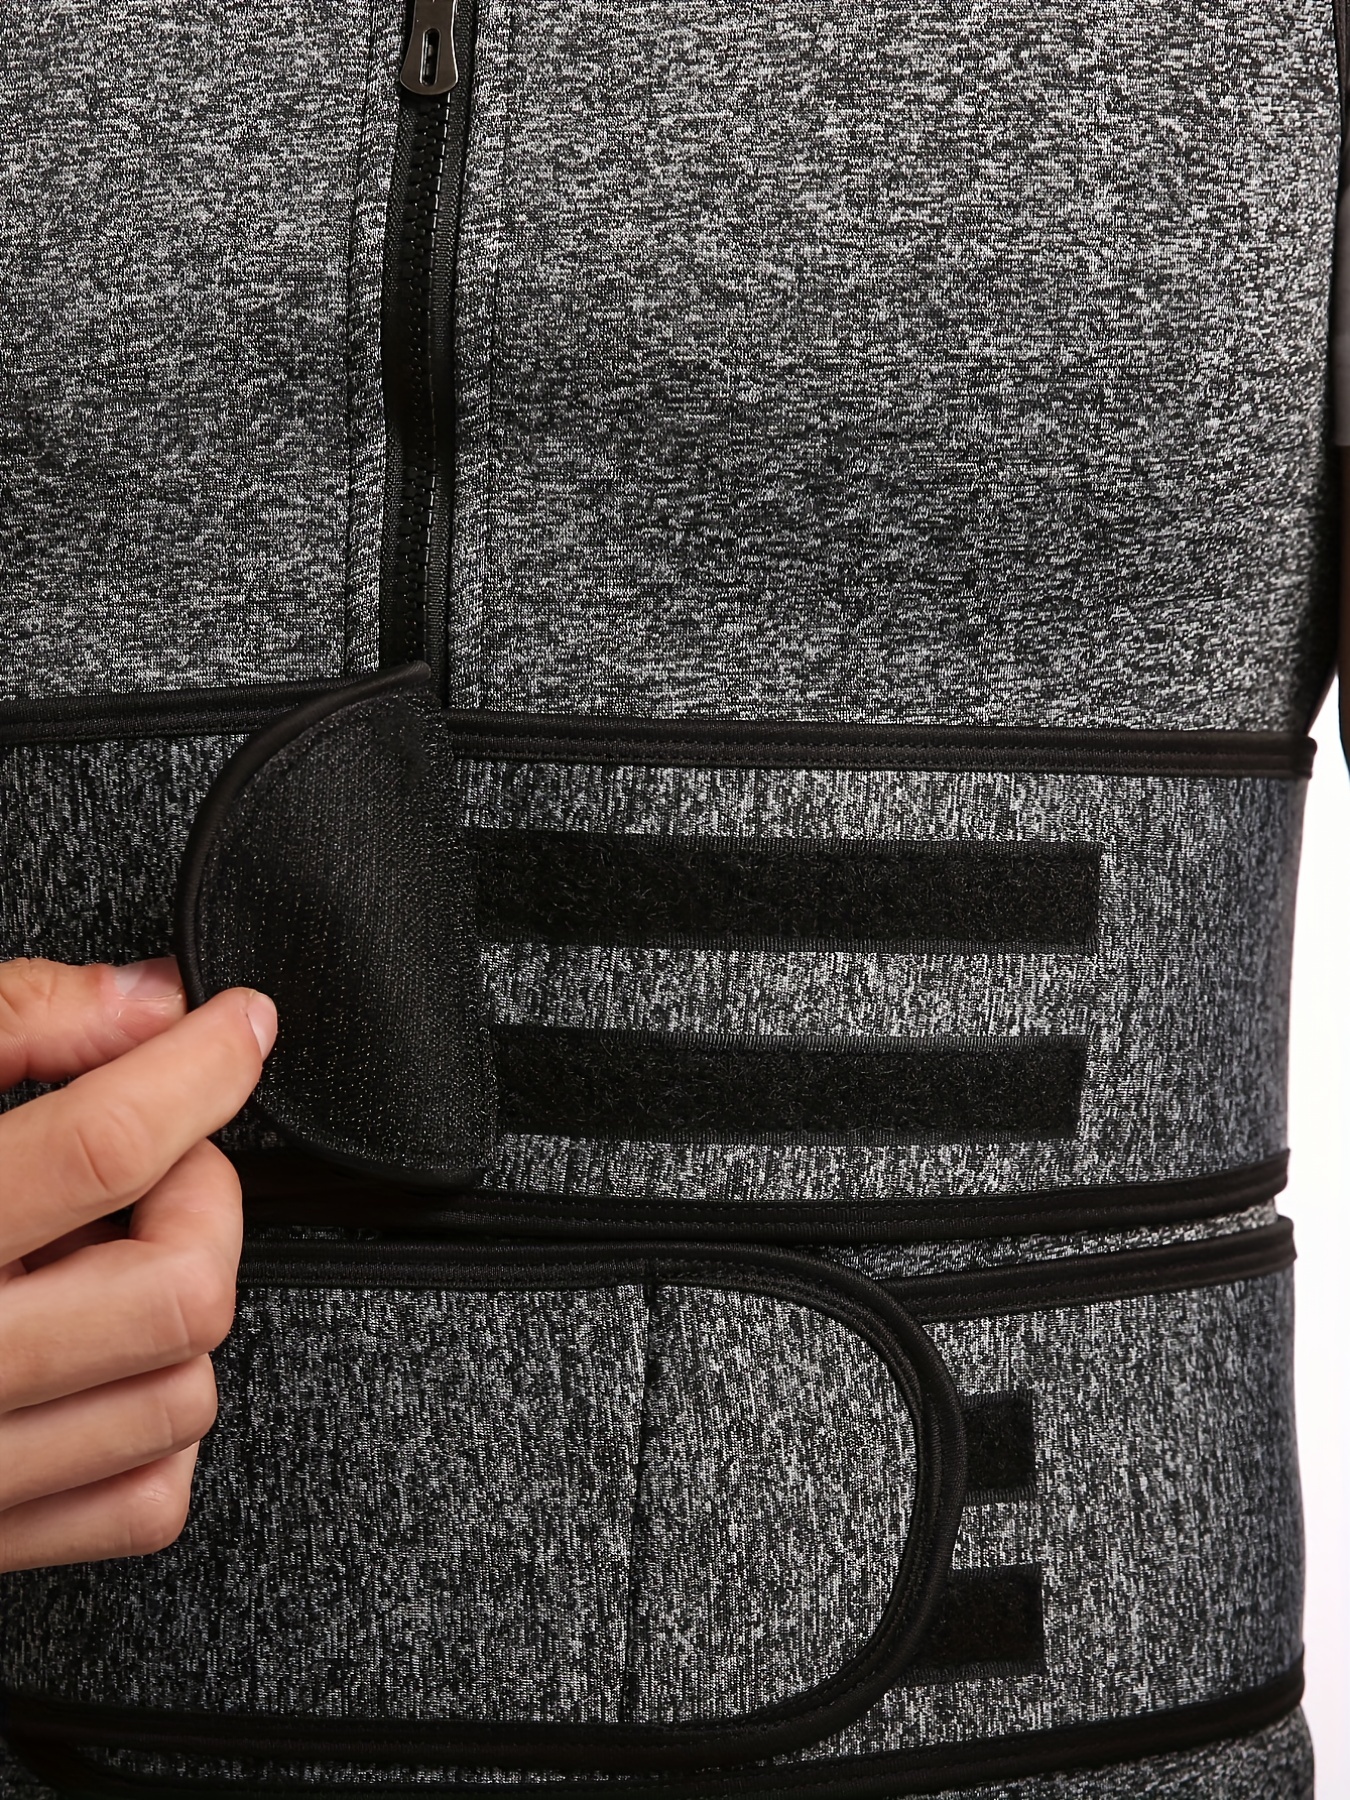 Men's Double Belt Vest Shapewear Neoprene Reinforced Sweat - Temu